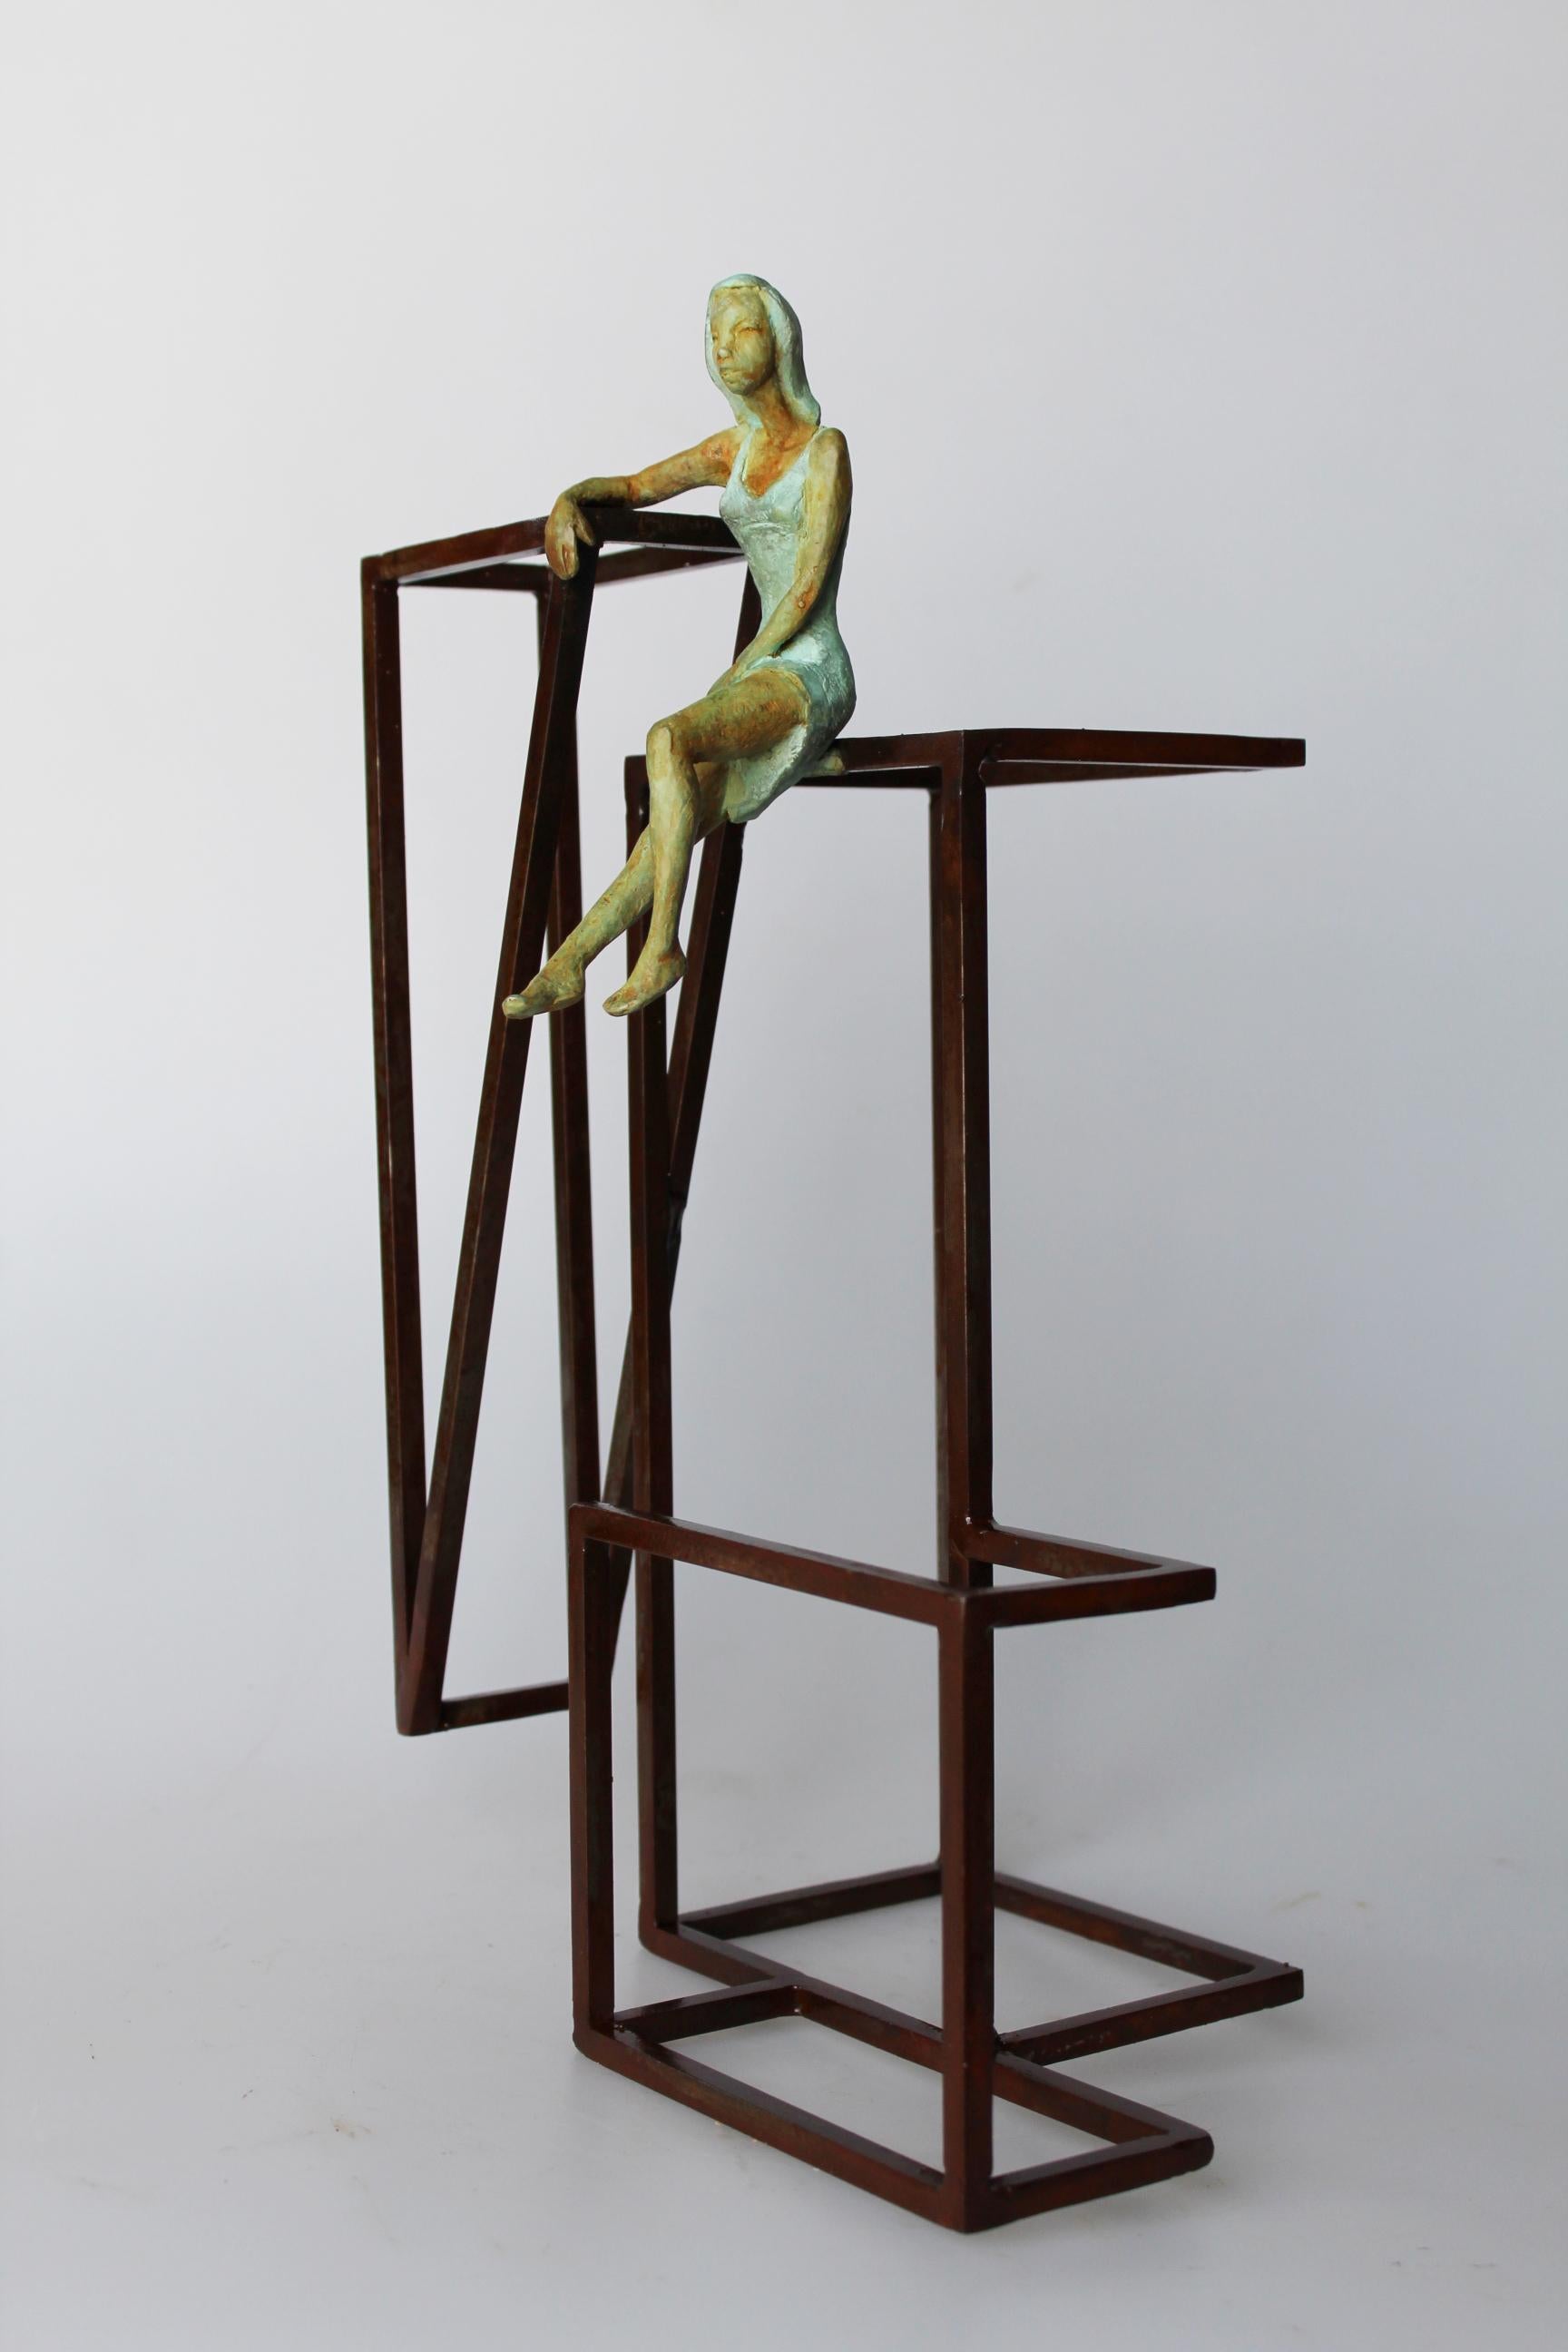 Joan Artigas Planas Figurative Sculpture - "Inspiration III" contemporary bronze table, mural sculpture figurative girl 